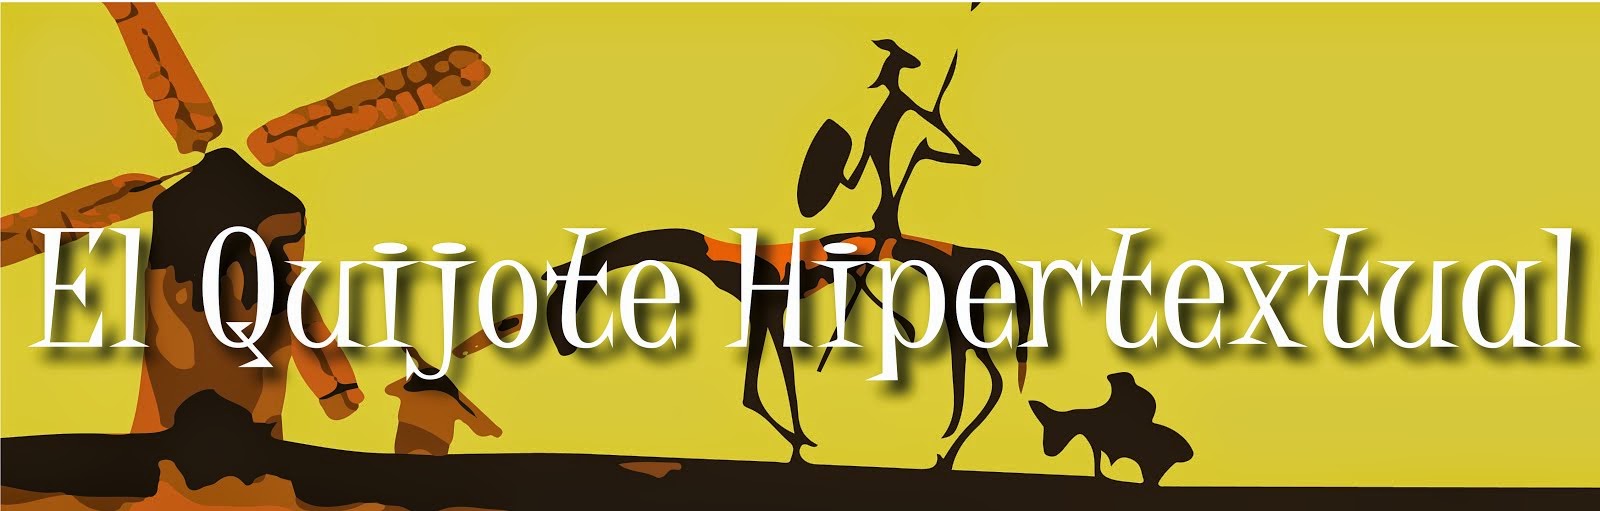 El Quijote Hipertextual